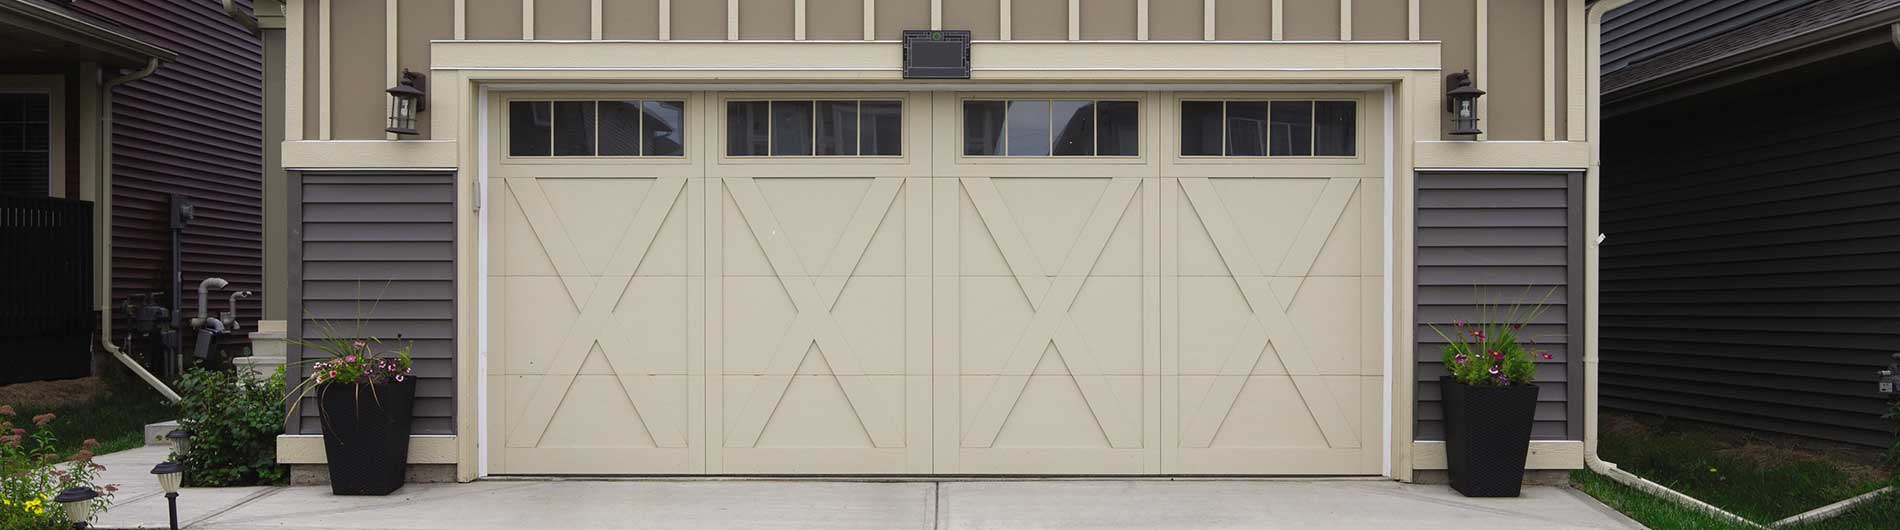 cream garage door with x's and windows